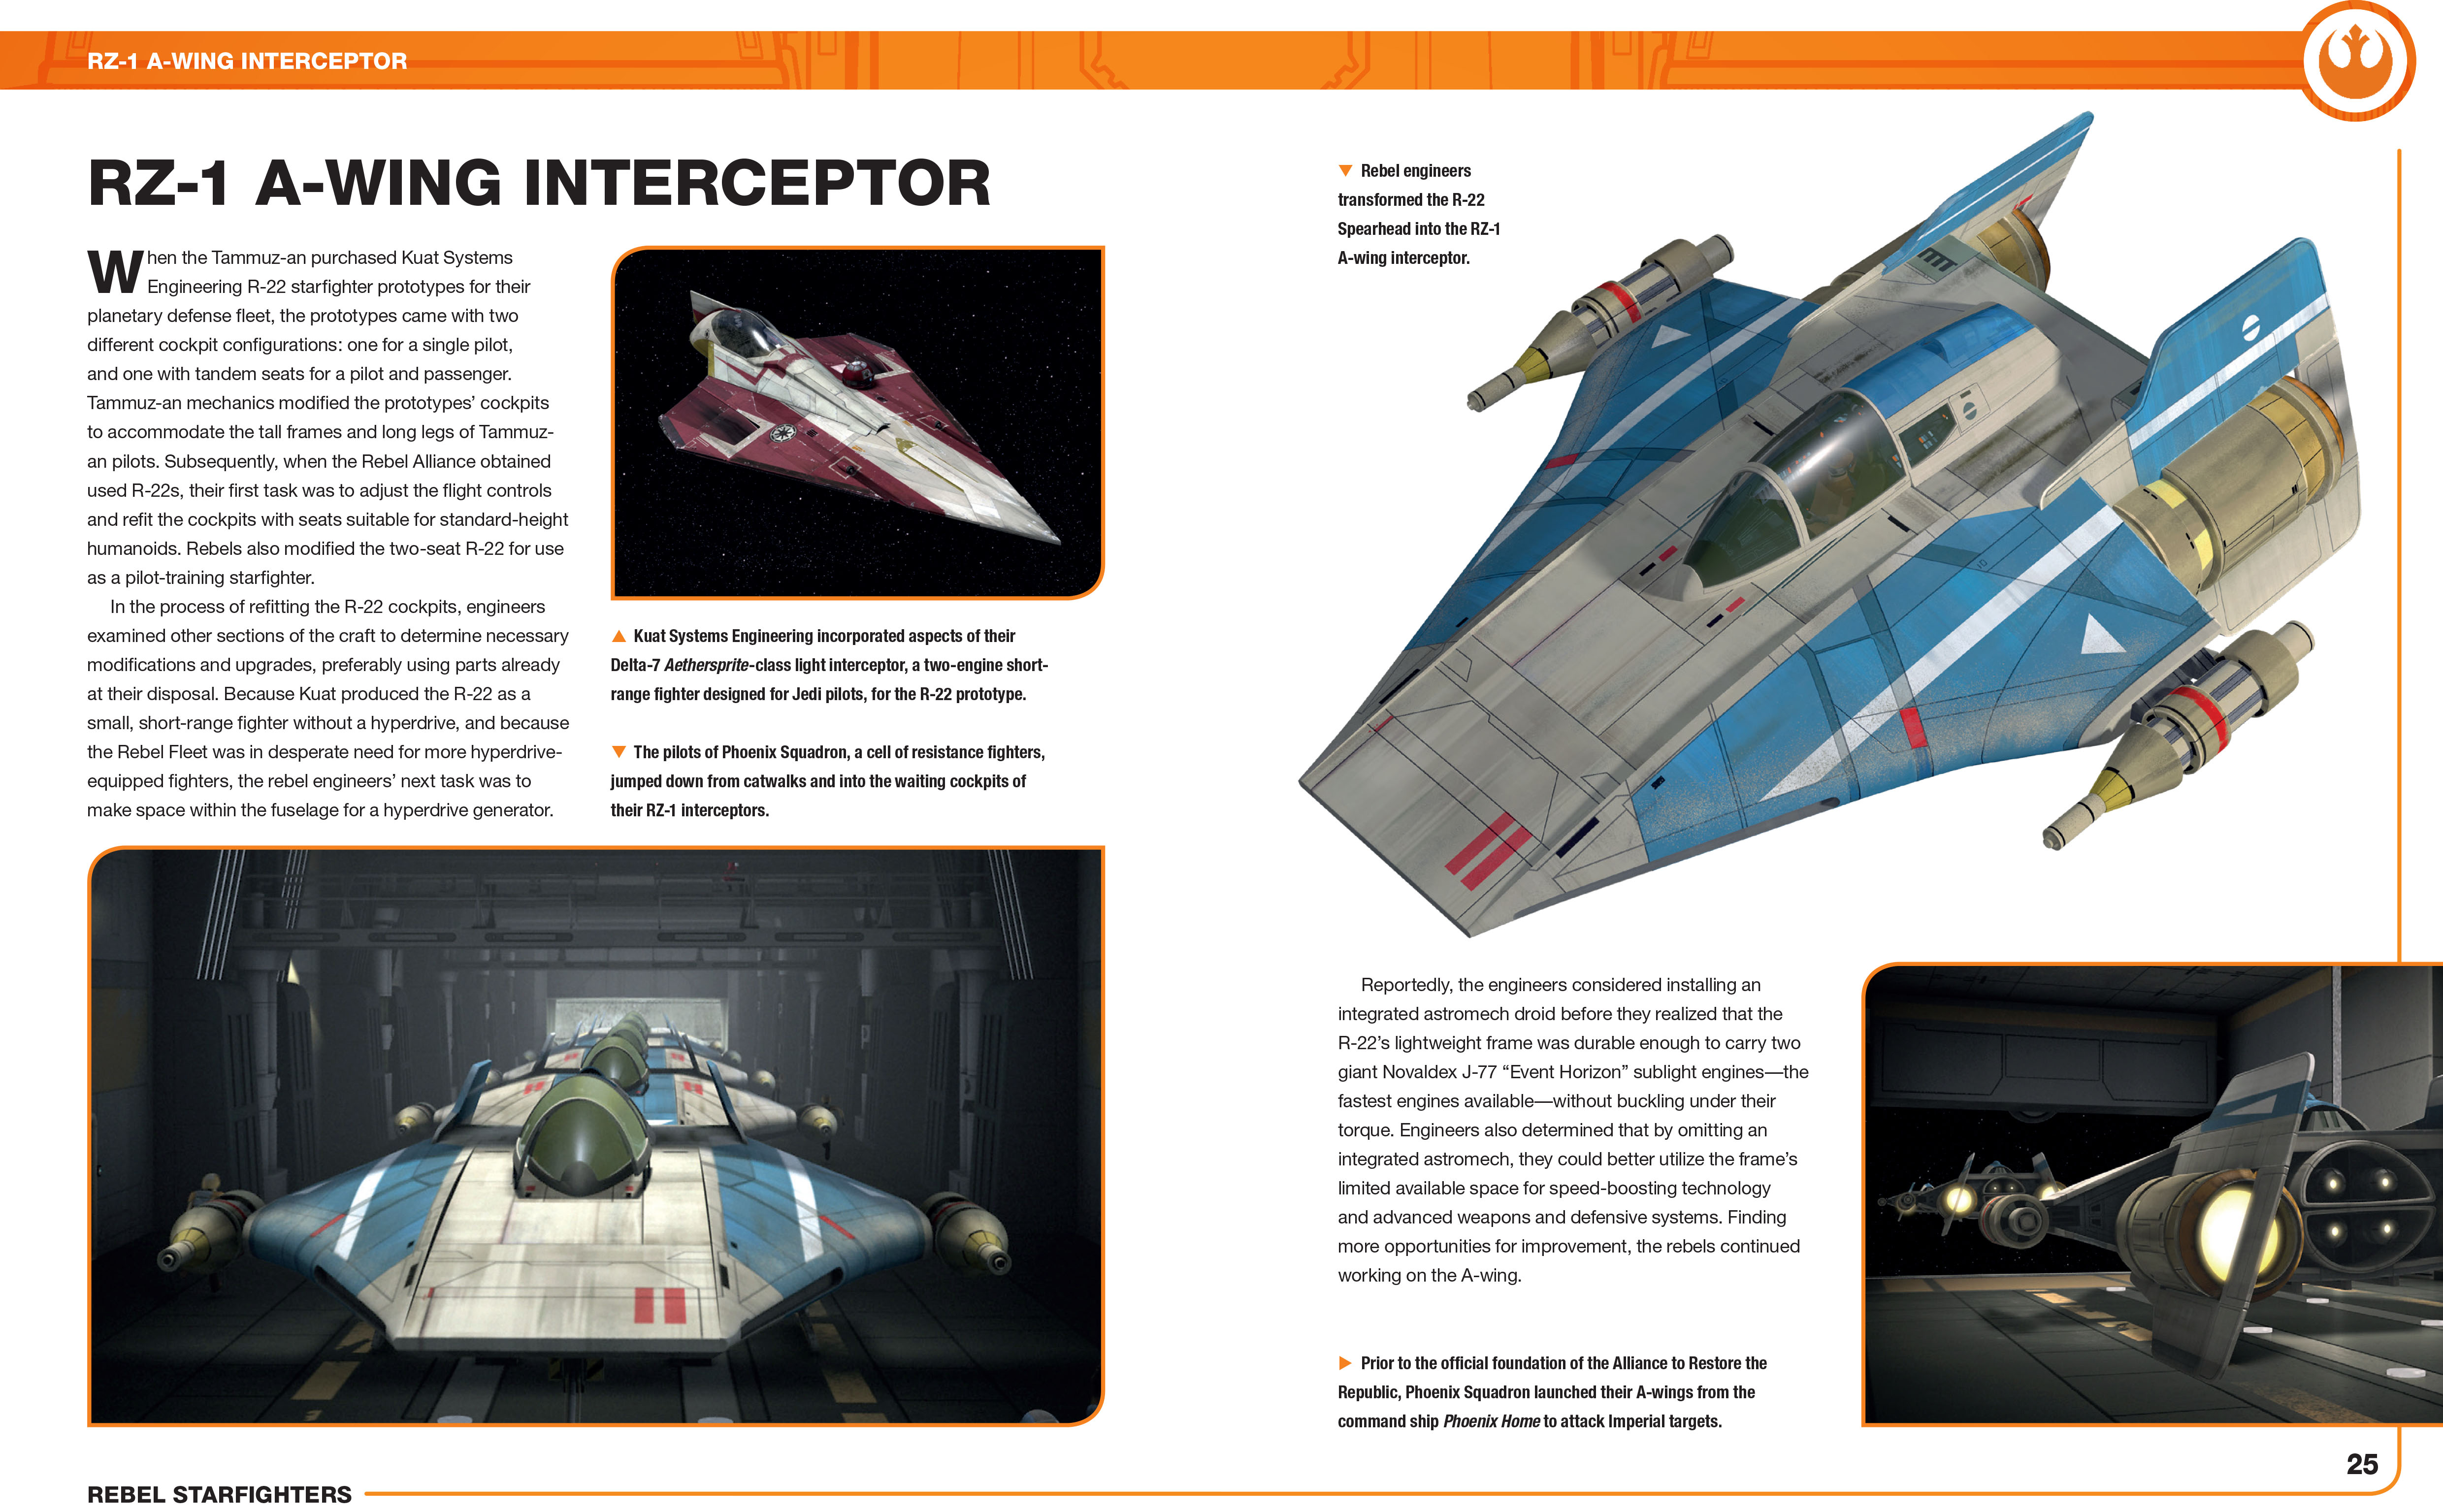 Haynes Manual Star Wars Rebel Starfighters Owners' Workshop Manual Imperial